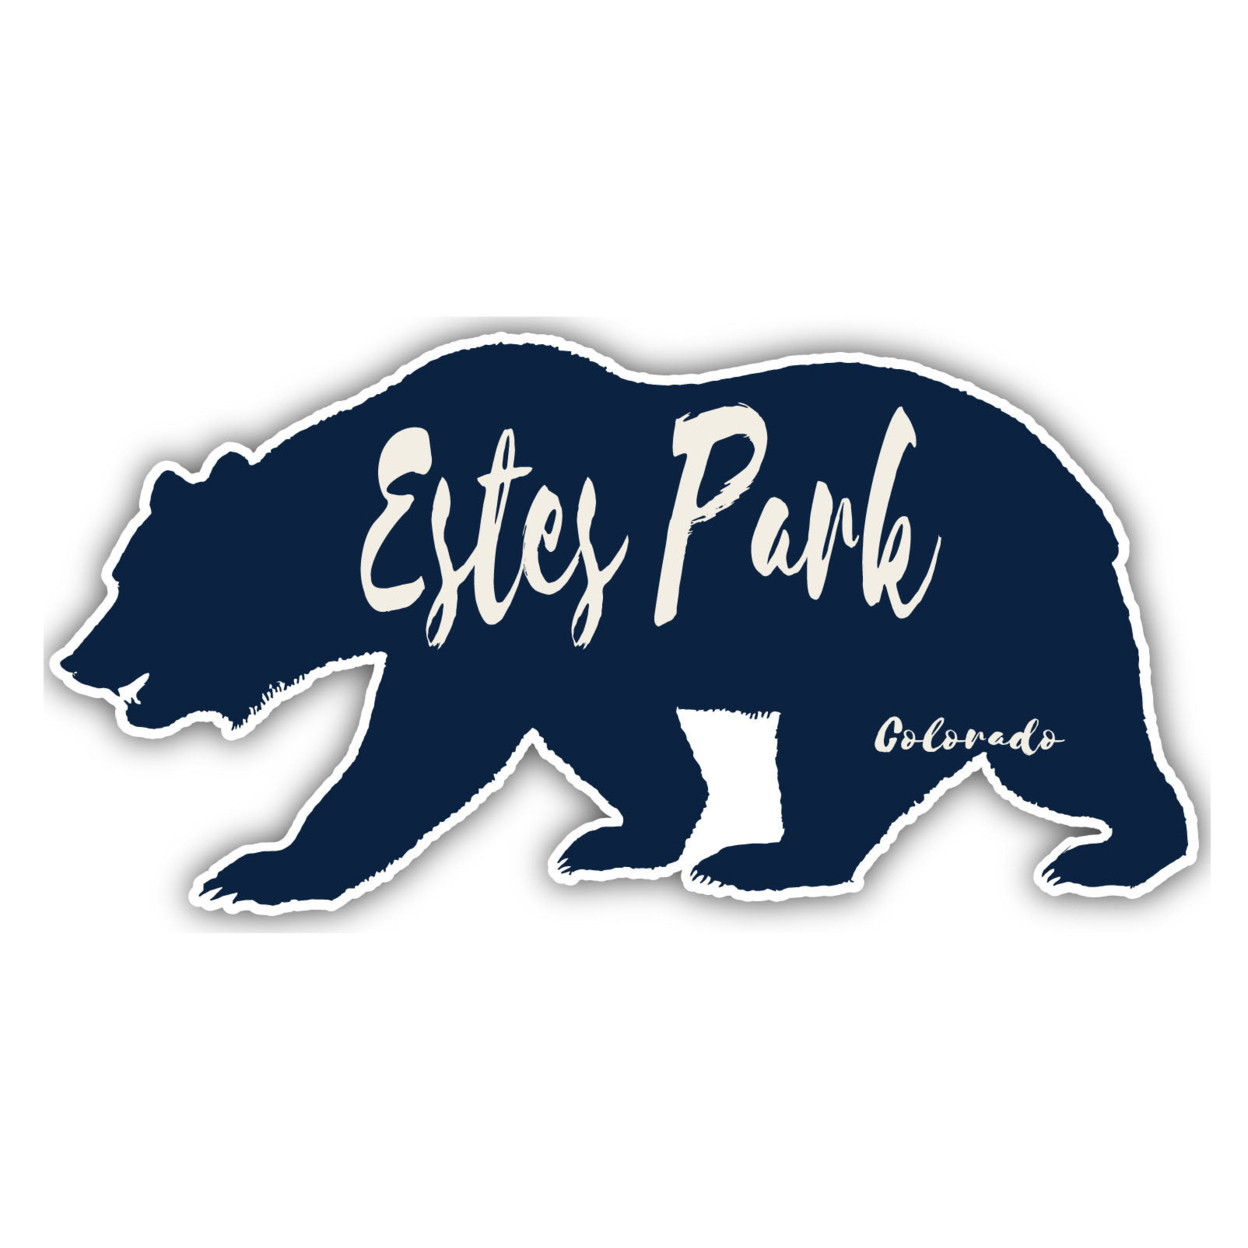 Estes Park Colorado Souvenir Decorative Stickers (Choose Theme And Size) - 4-Pack, 10-Inch, Tent